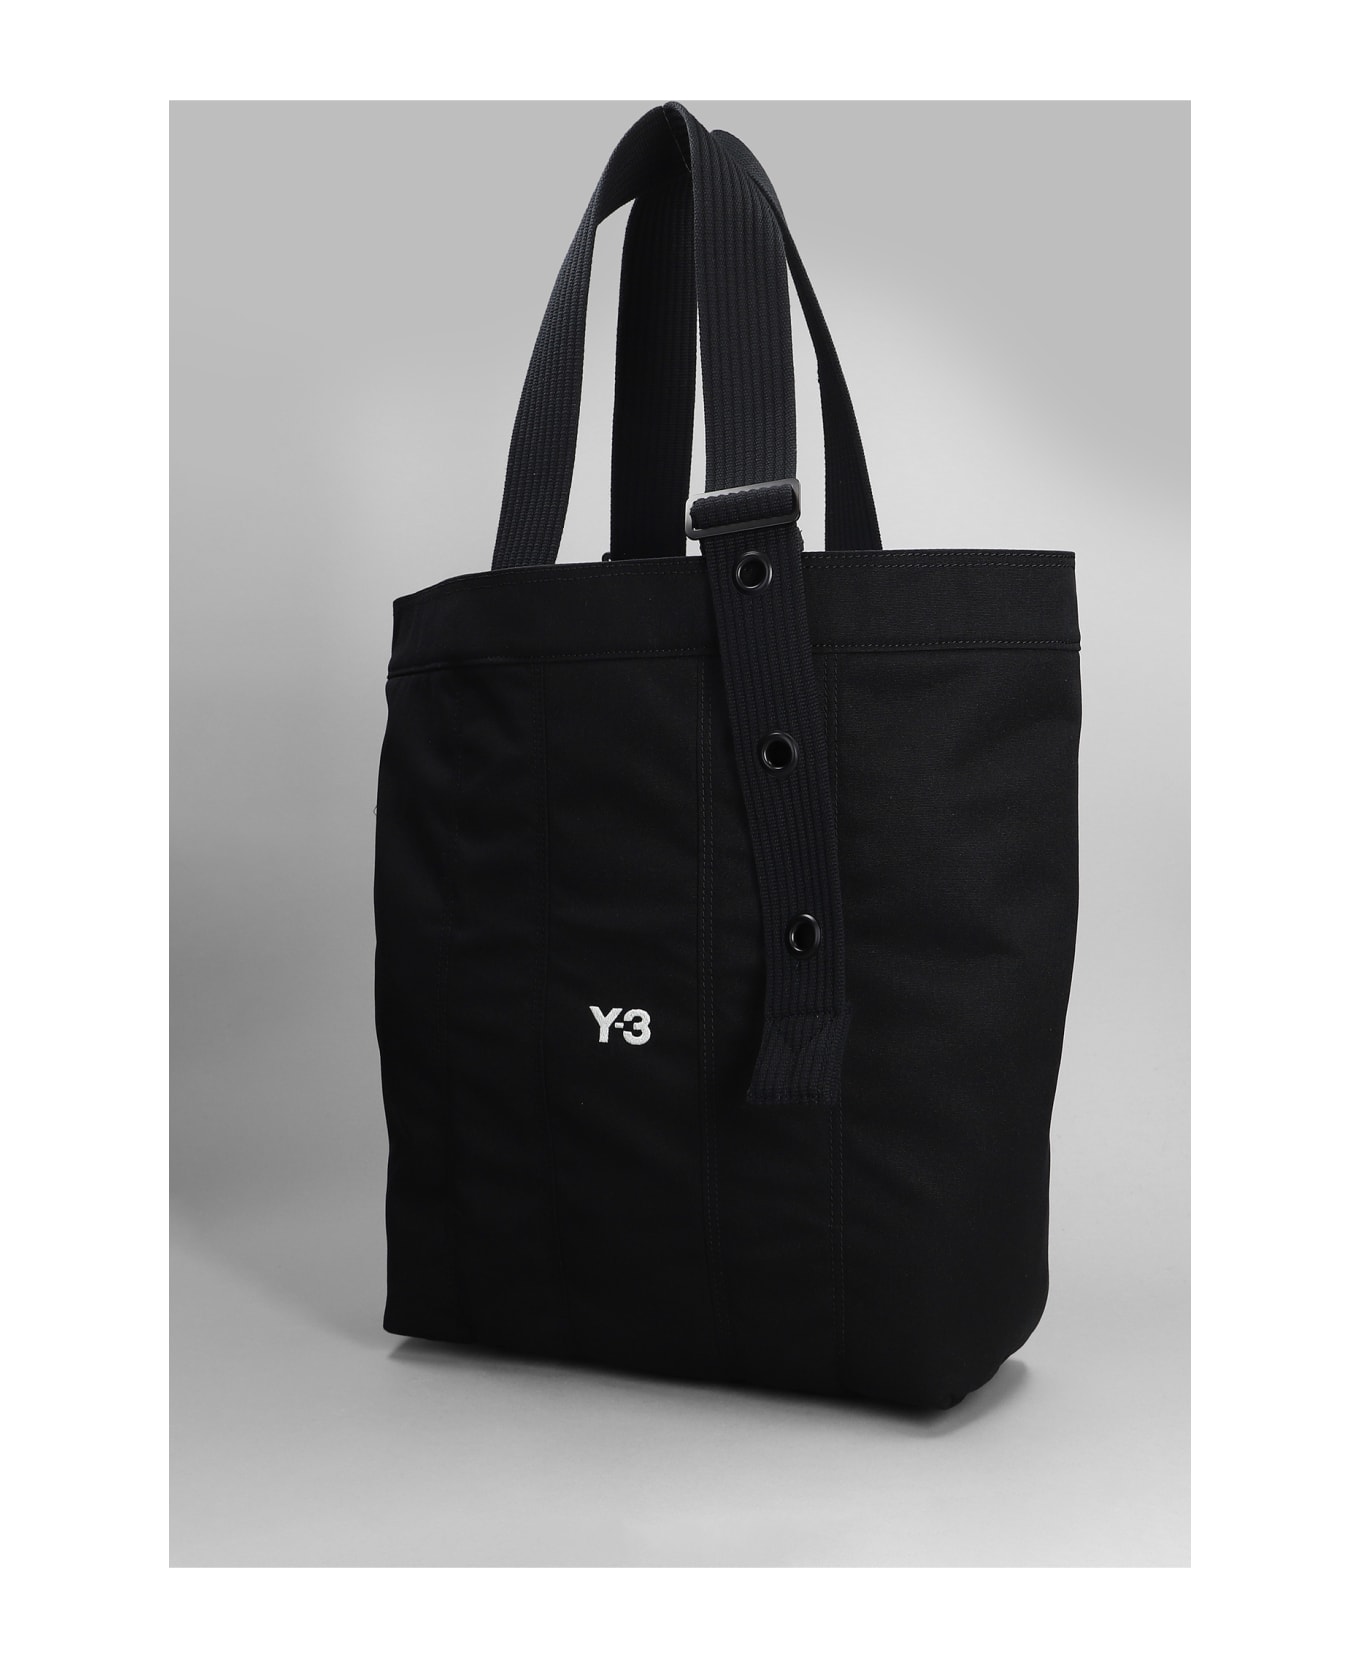 Y-3 Tote Bag - Black